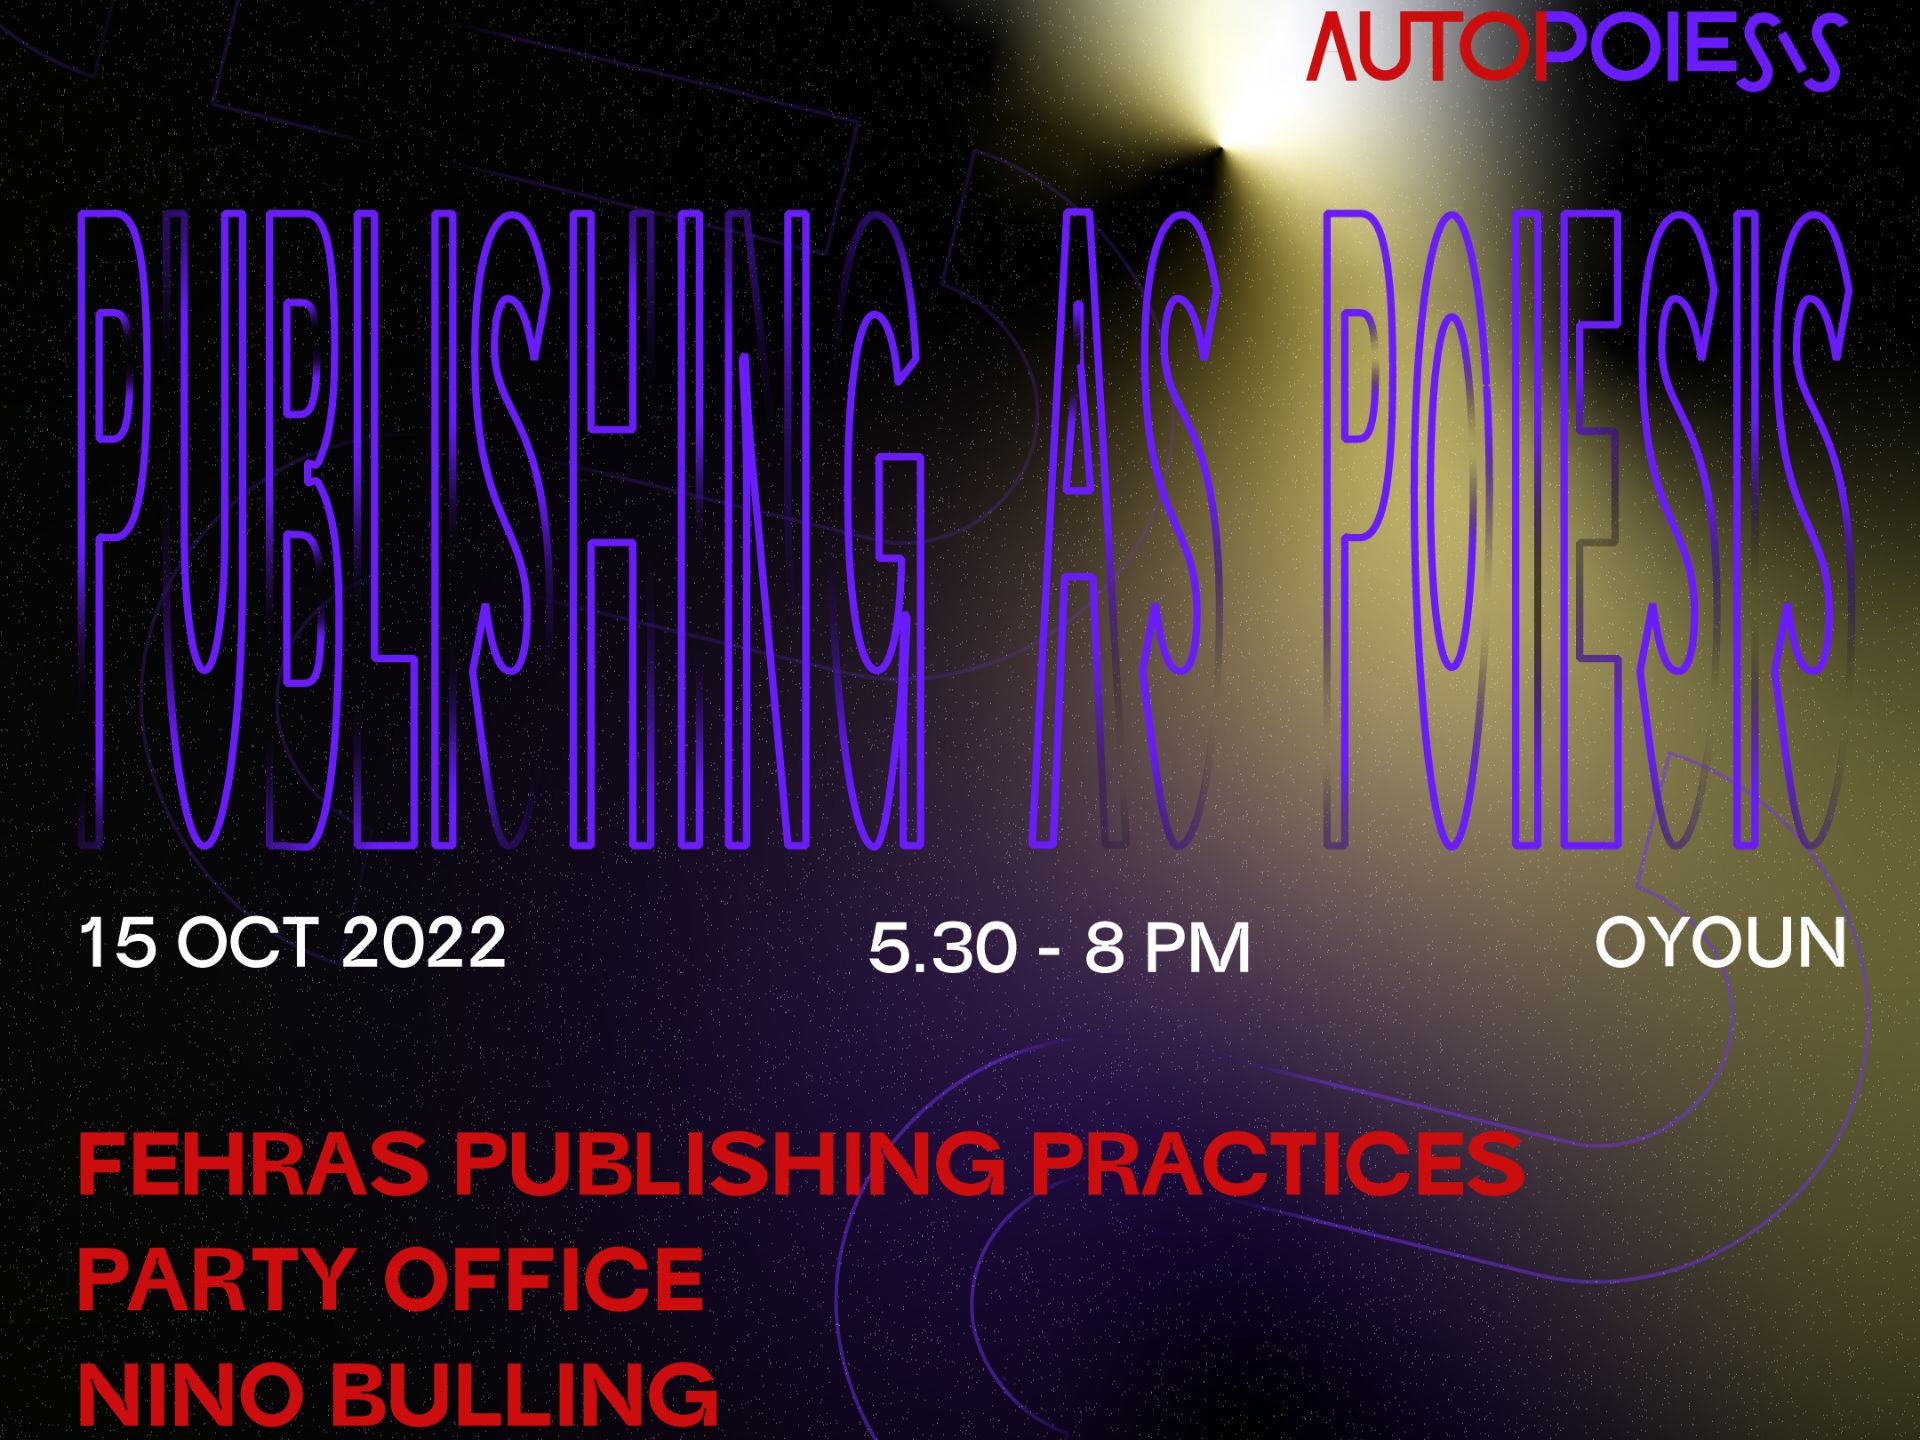 Talk | AUTOPOIESIS | Publishing as Poiesis